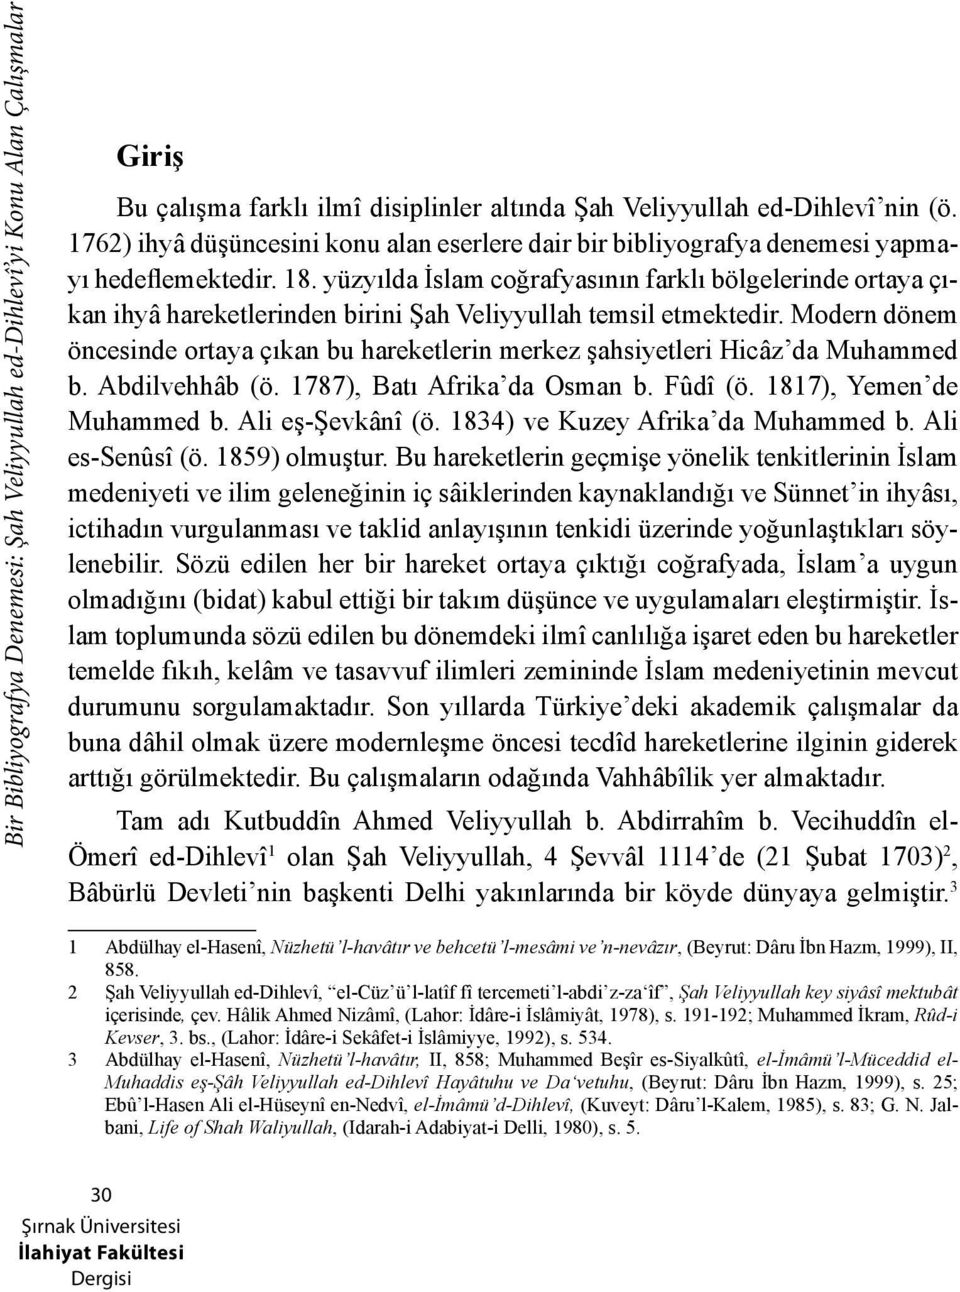 yüzyılda İslam coğrafyasının farklı bölgelerinde ortaya çıkan ihyâ hareketlerinden birini Şah Veliyyullah temsil etmektedir.